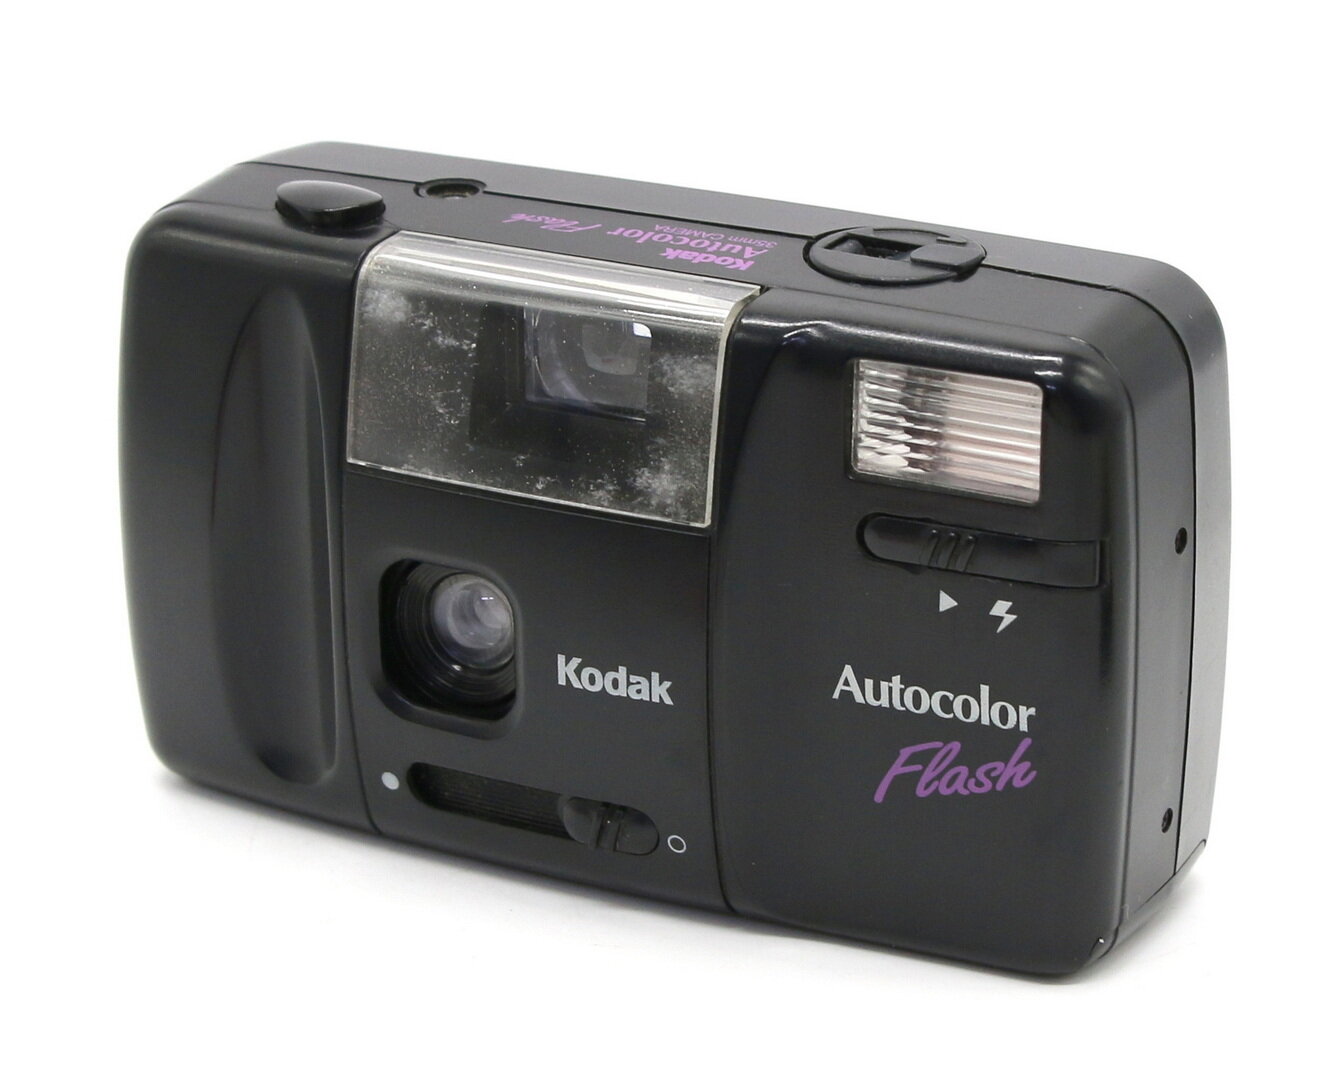 Kodak Autocolor Flash